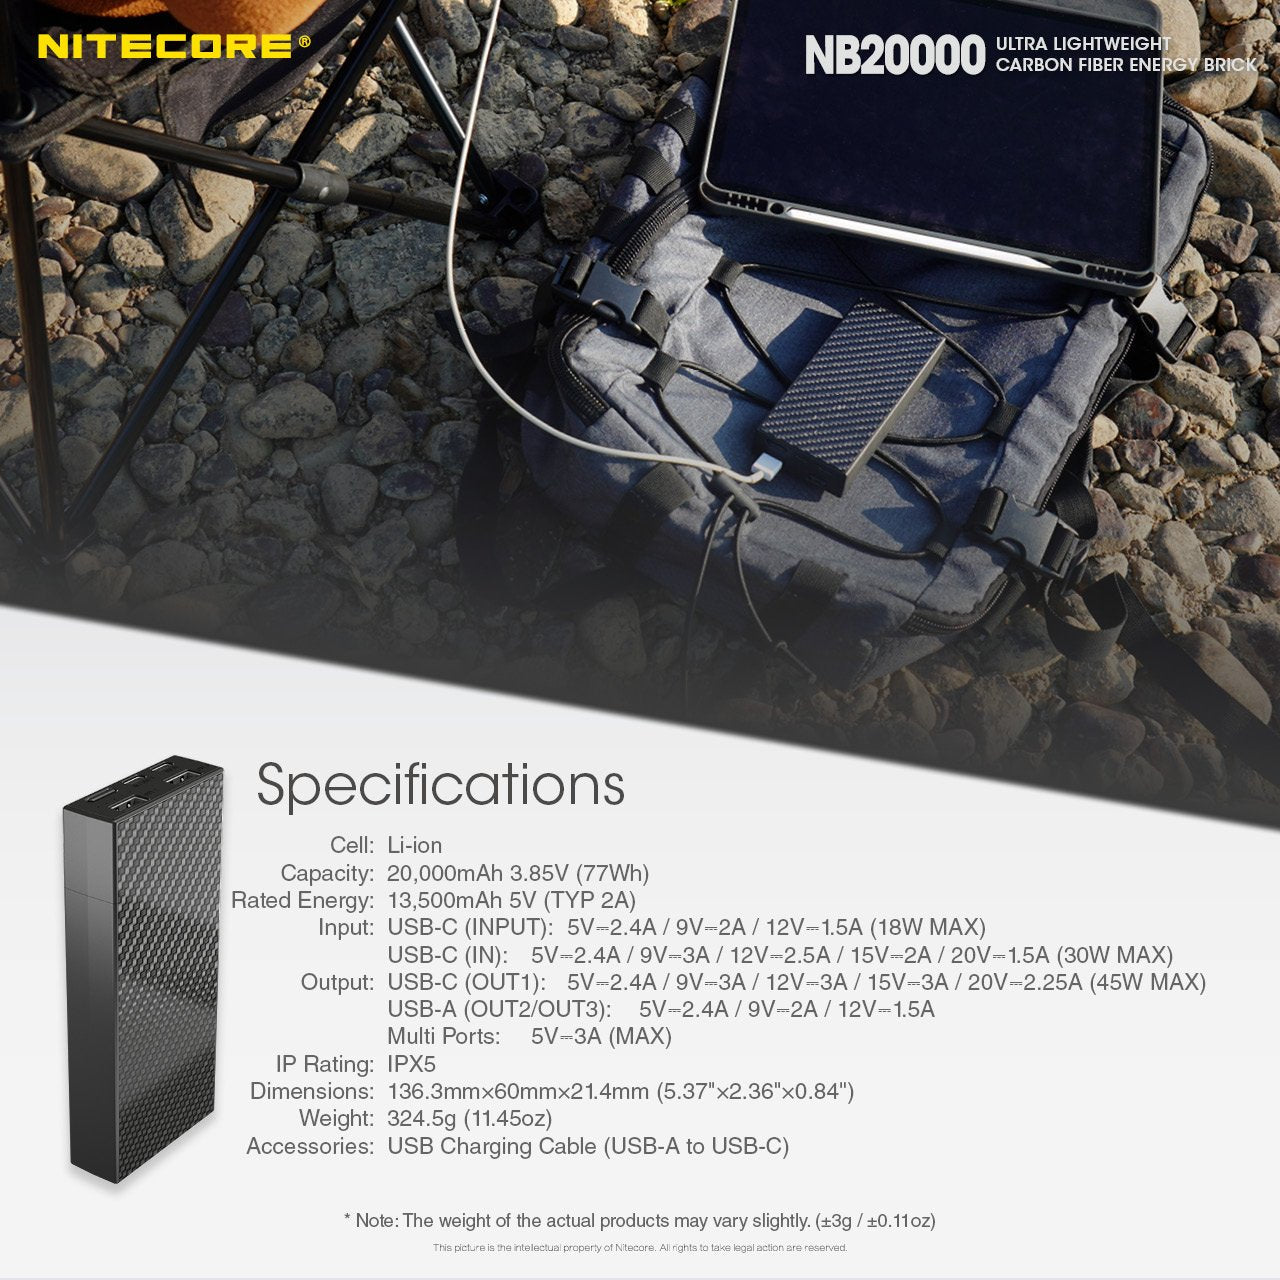 NB20000 Carbon Fiber Energy Brick (20,000mAh 3A 45W)